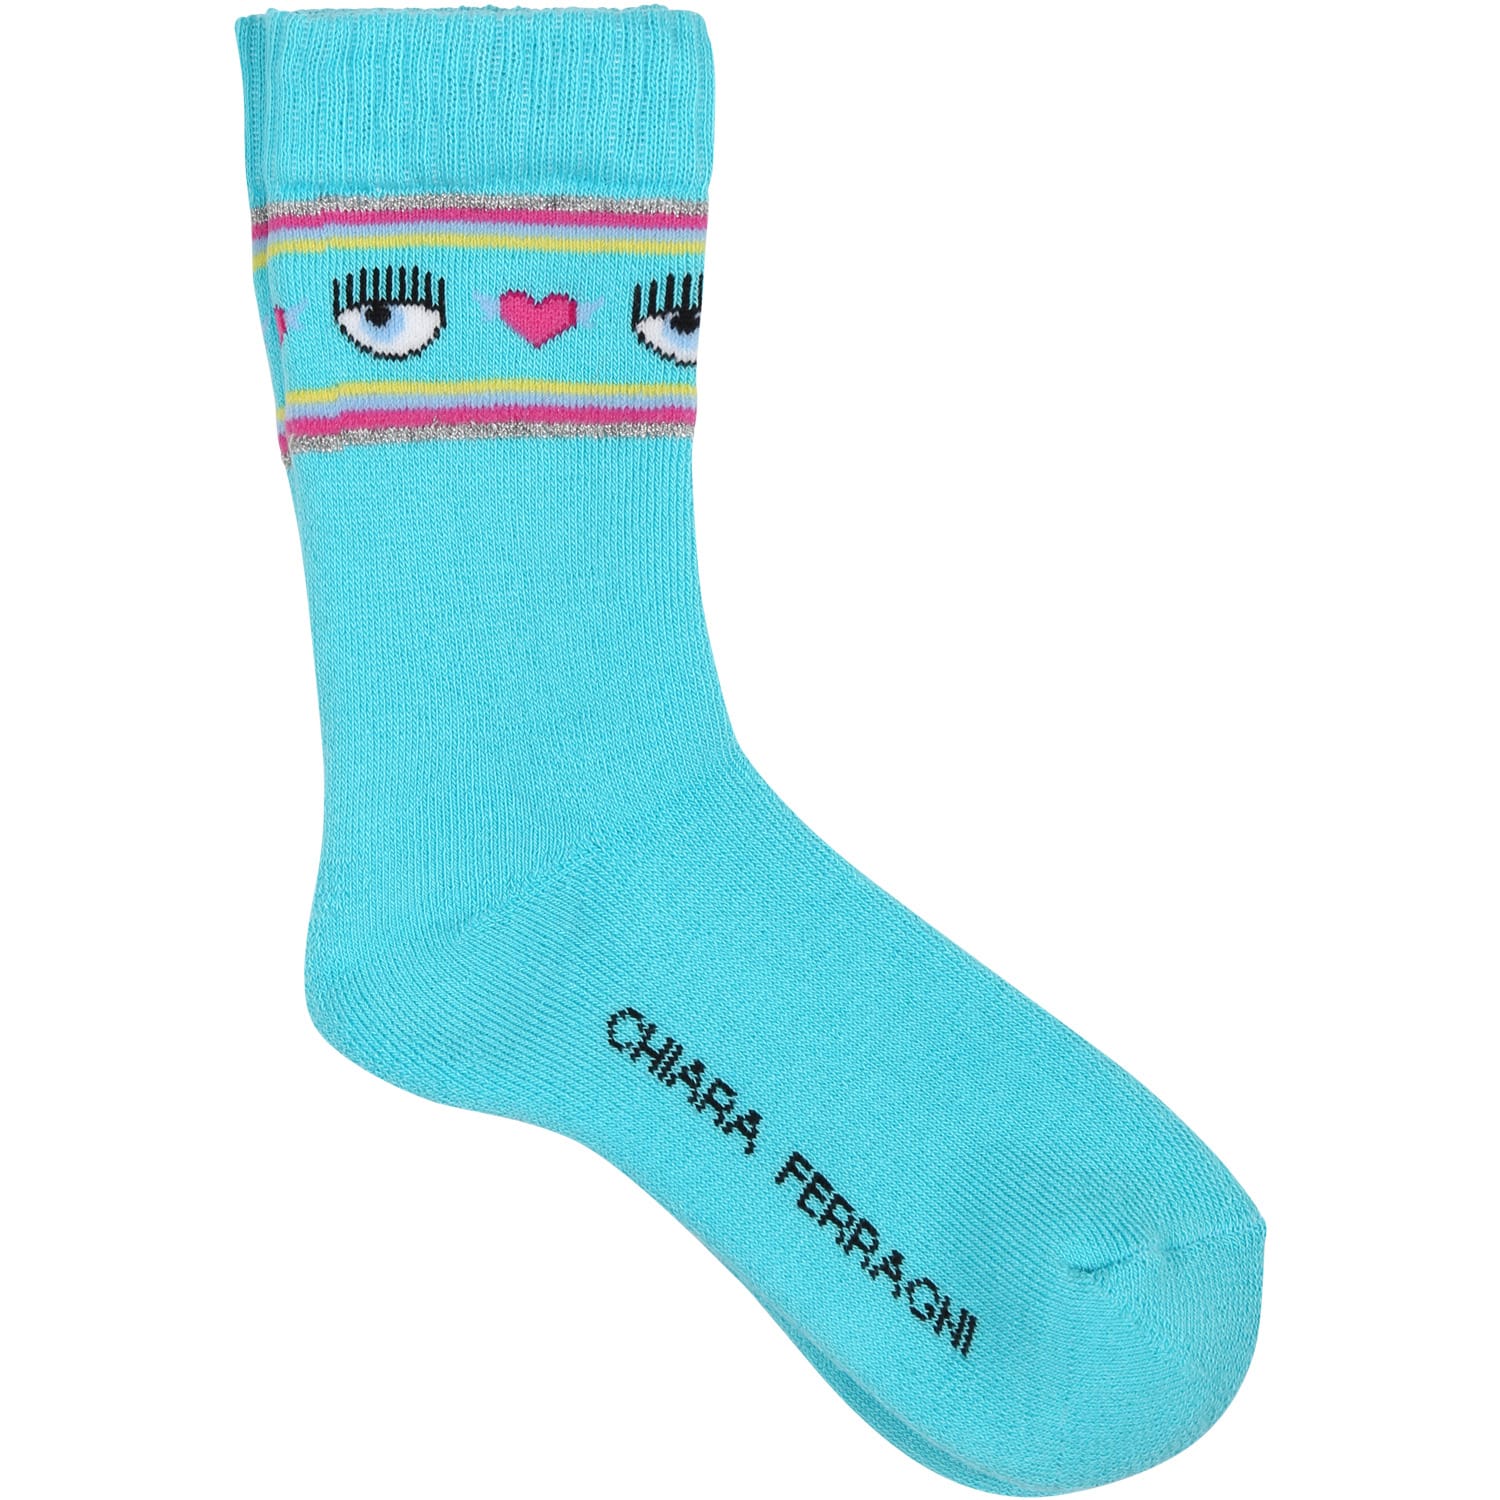 Chiara Ferragni Kids' Light Blue Socks For Girl With Flirting Eyes And Hearts